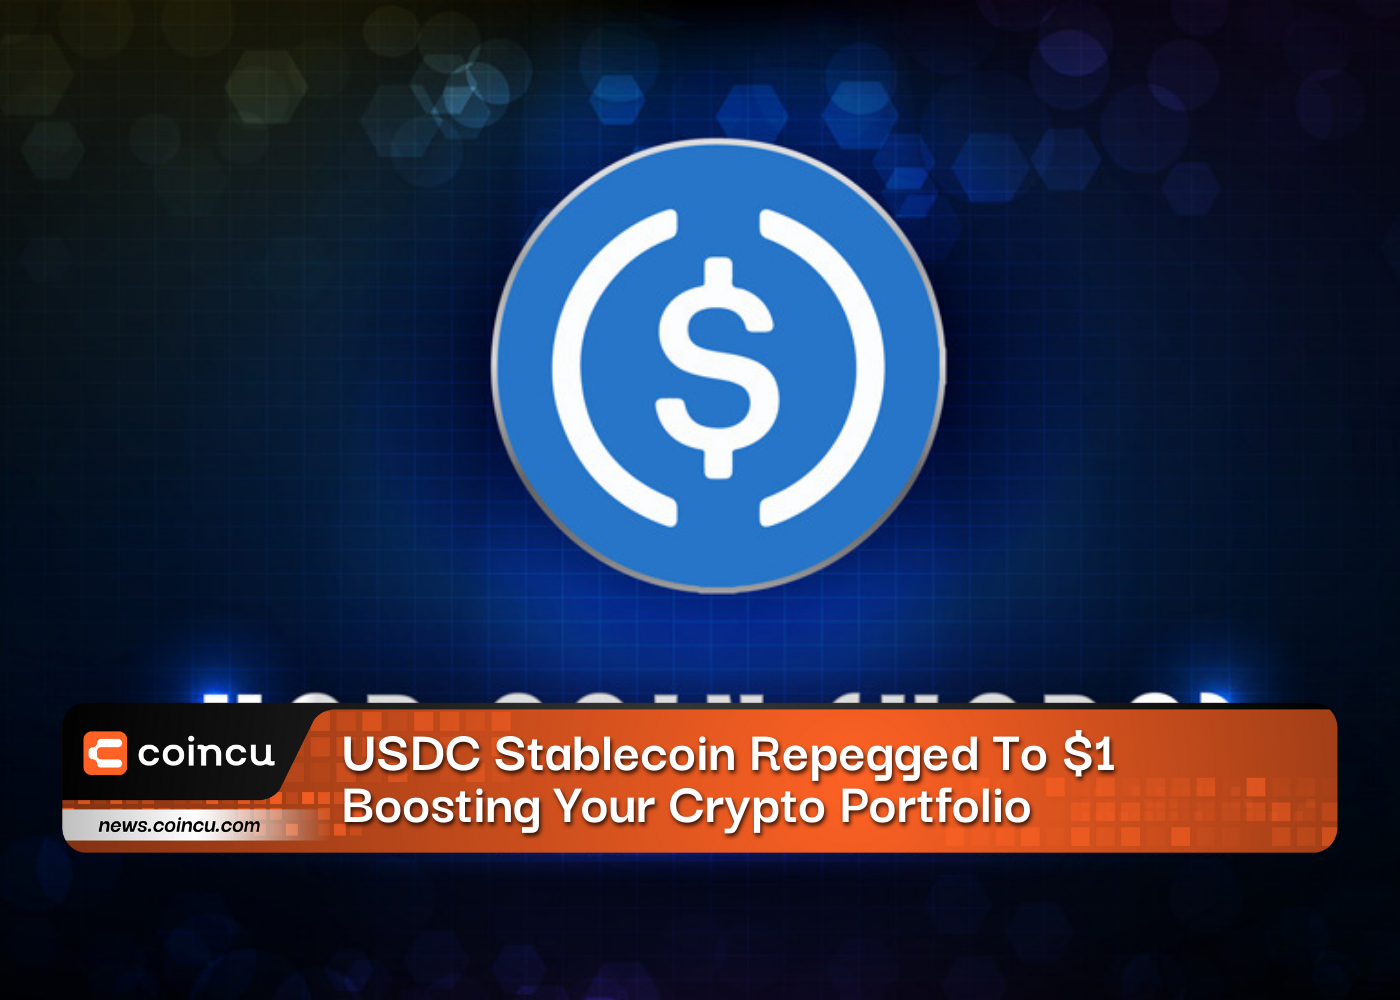 USDC Stablecoin repéré à 1